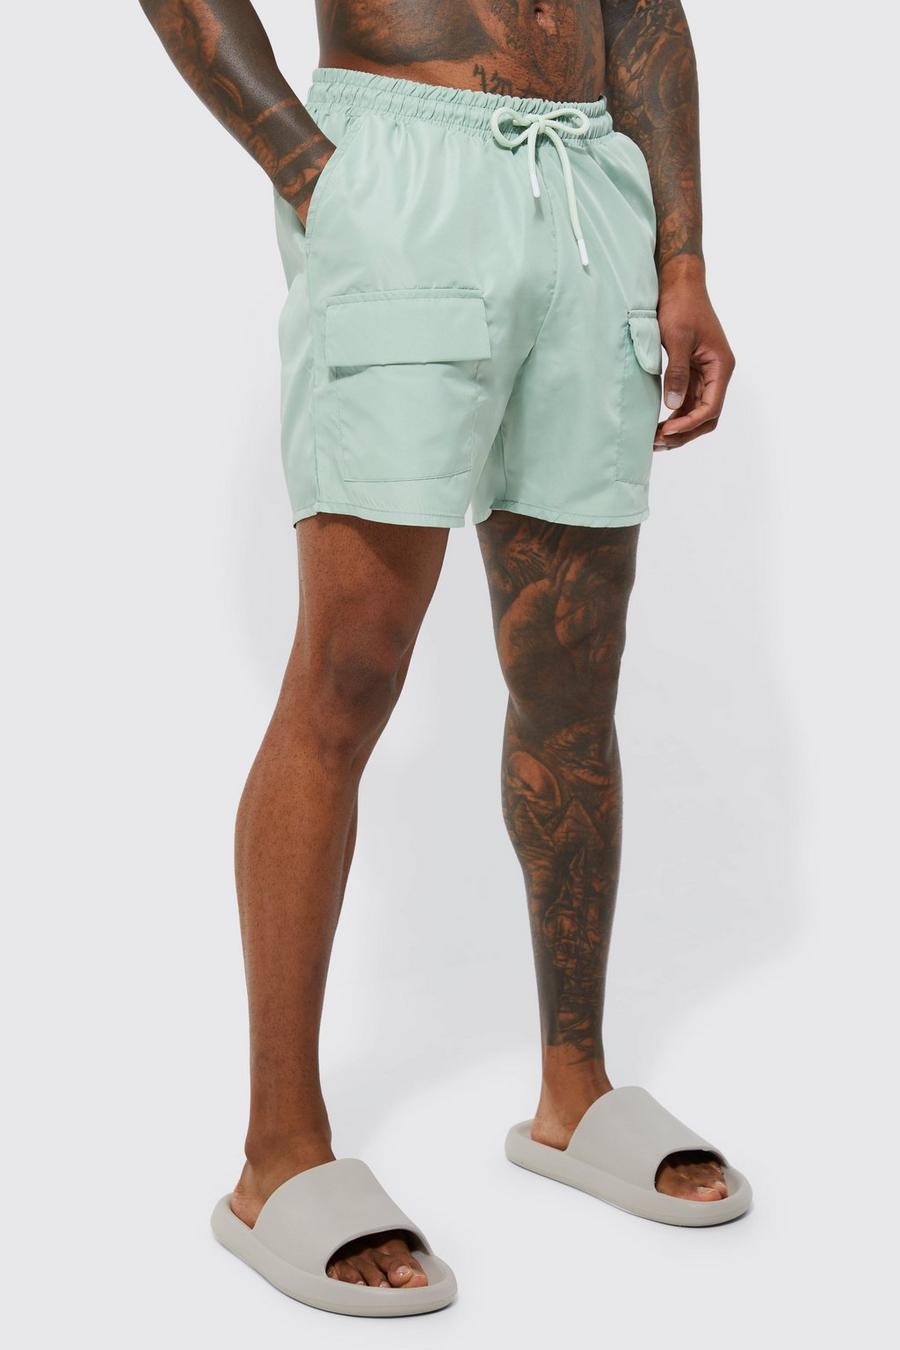 Khaki Jean Shorts de baño con estampado de cebra dividido de tejido reciclado de Reclaimed Vintage Inspired